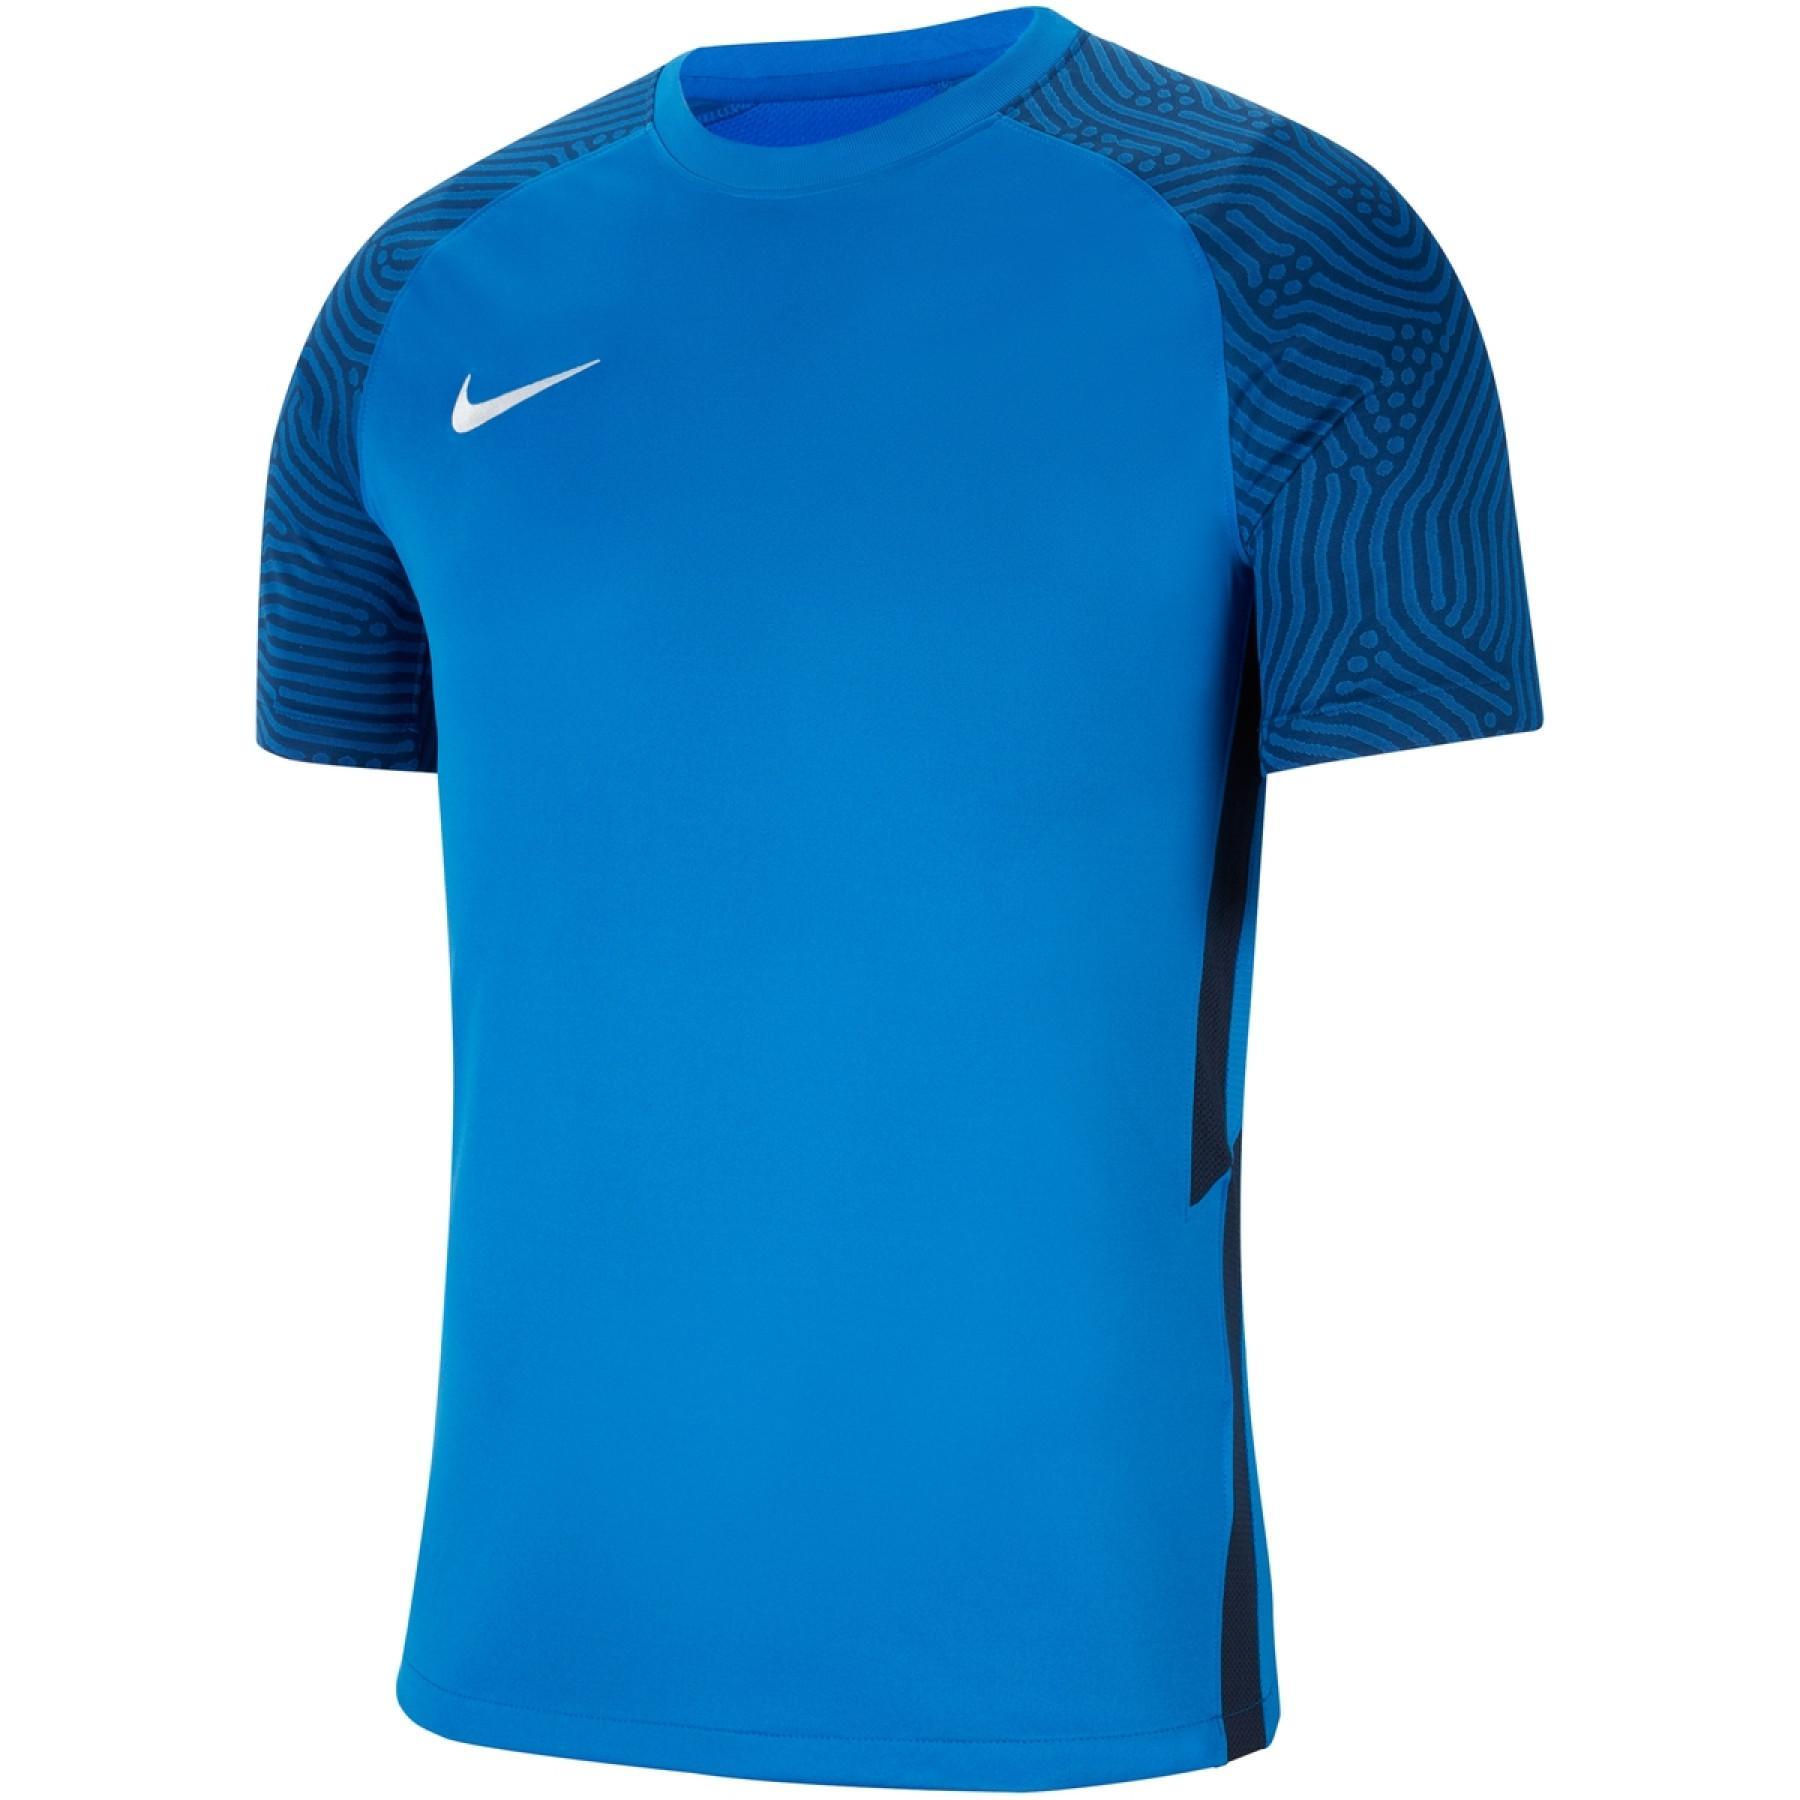 Camiseta Nike Dynamic Fit Strike II